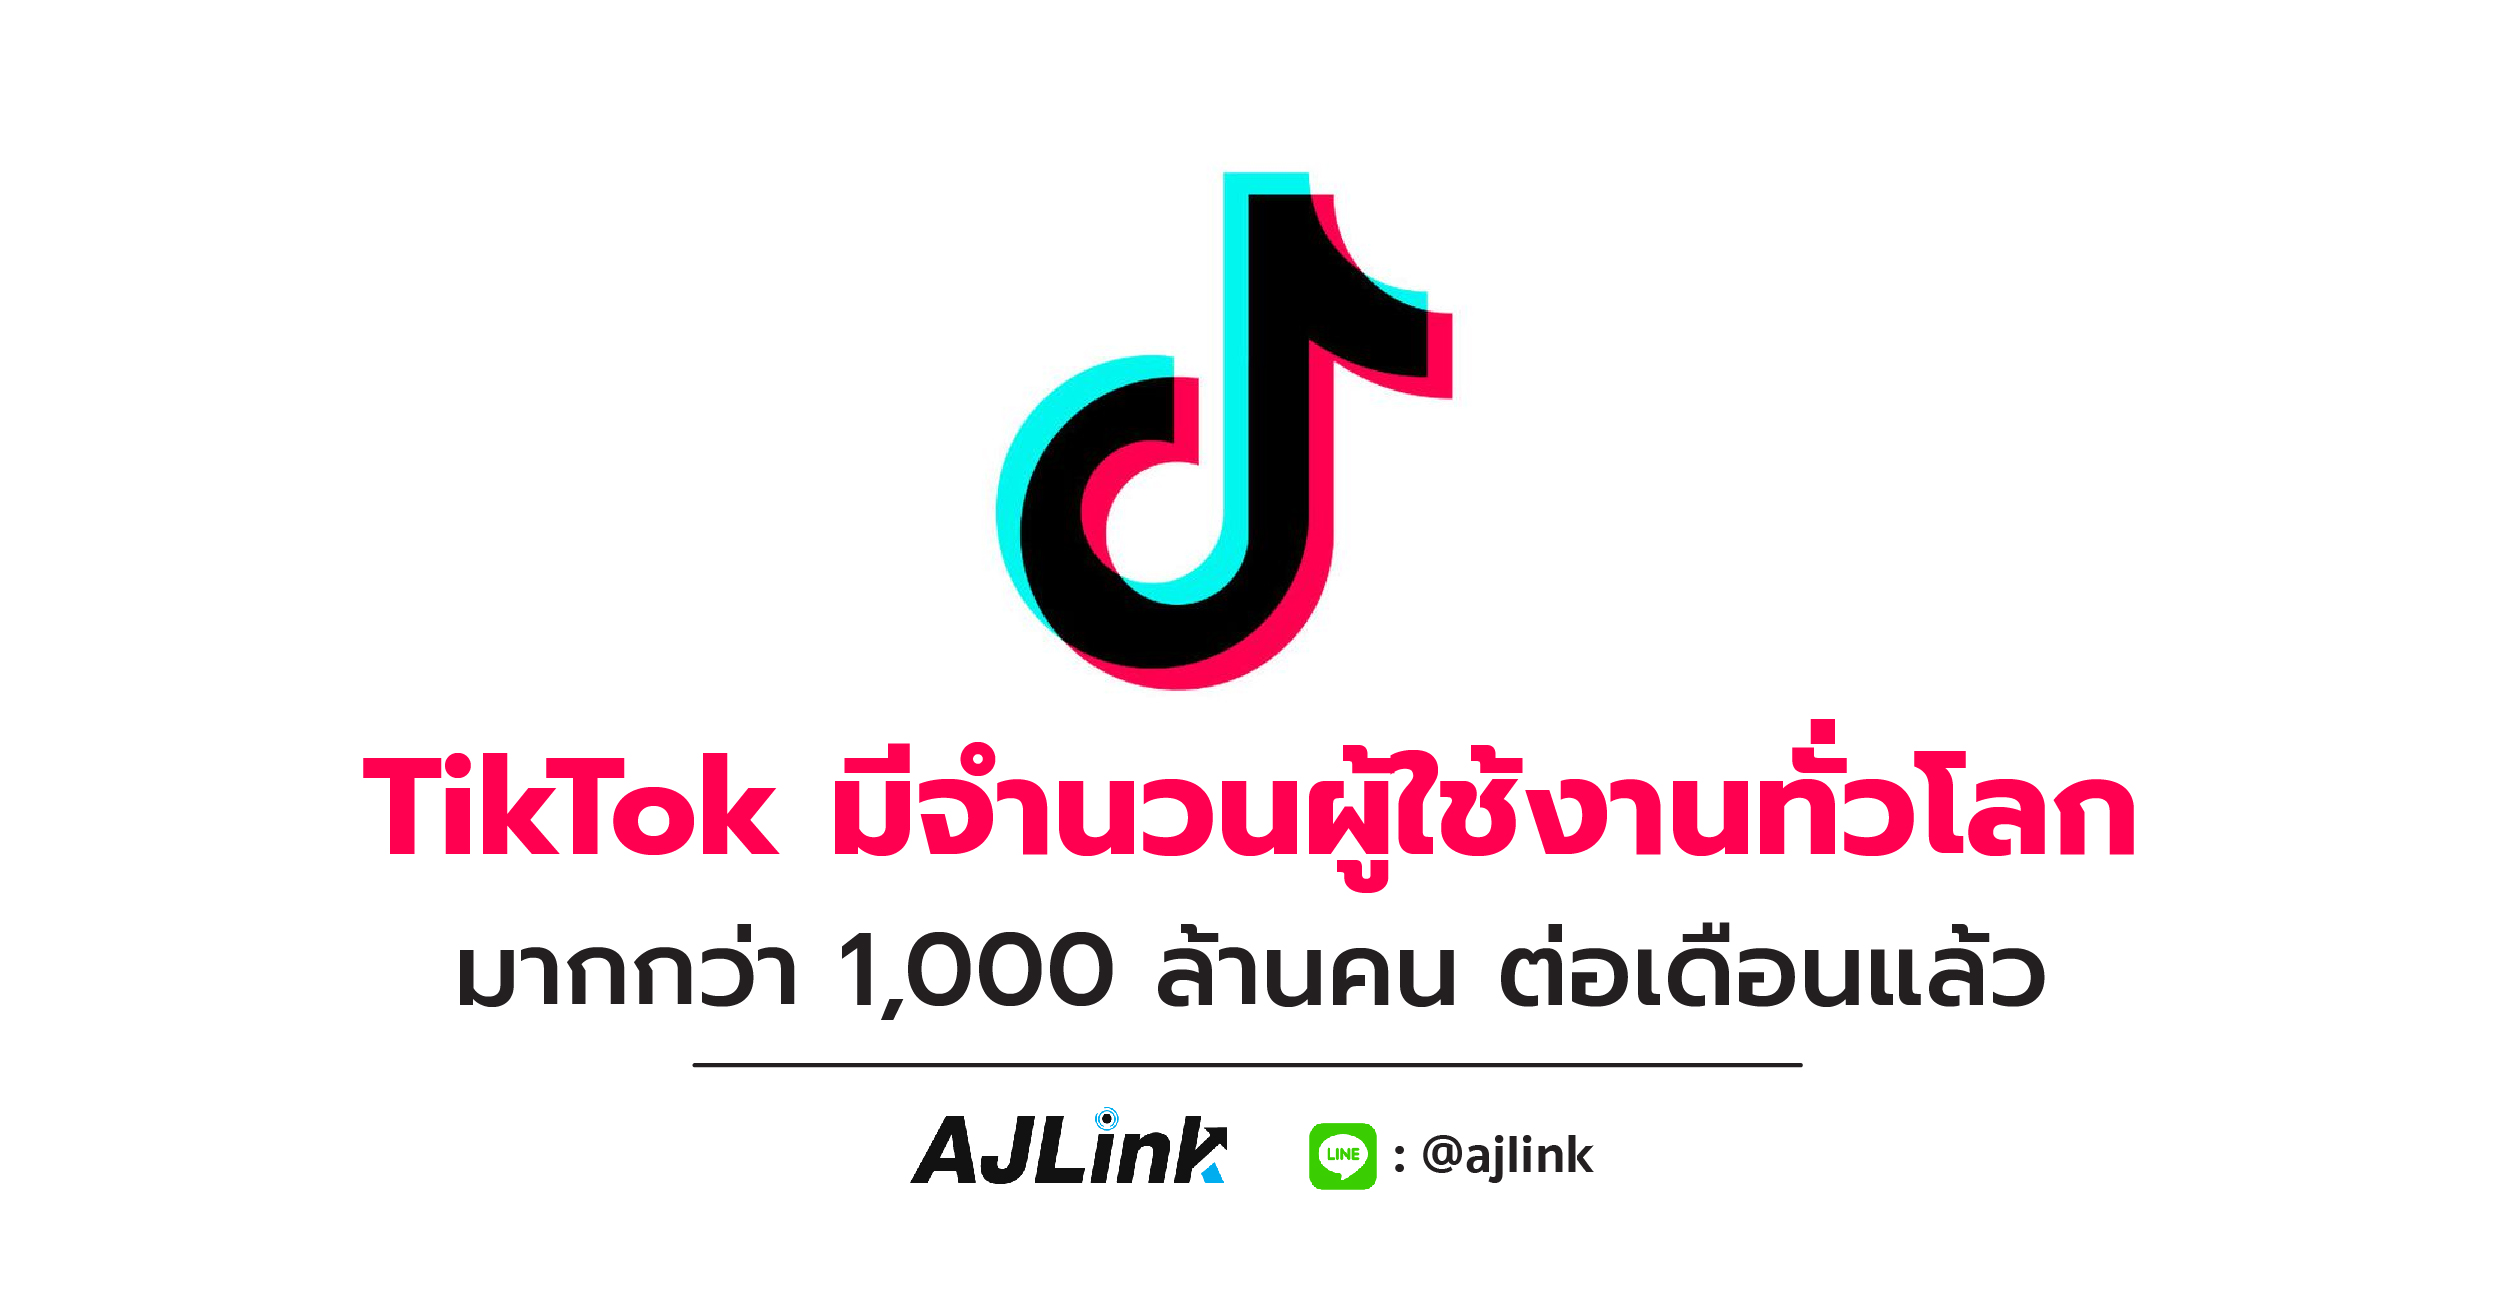 TikTok มีจำนวนผู้ใช้งานทั่วโลกมากกว่า 1,000 ล้านคน ต่อเดือนแล้ว